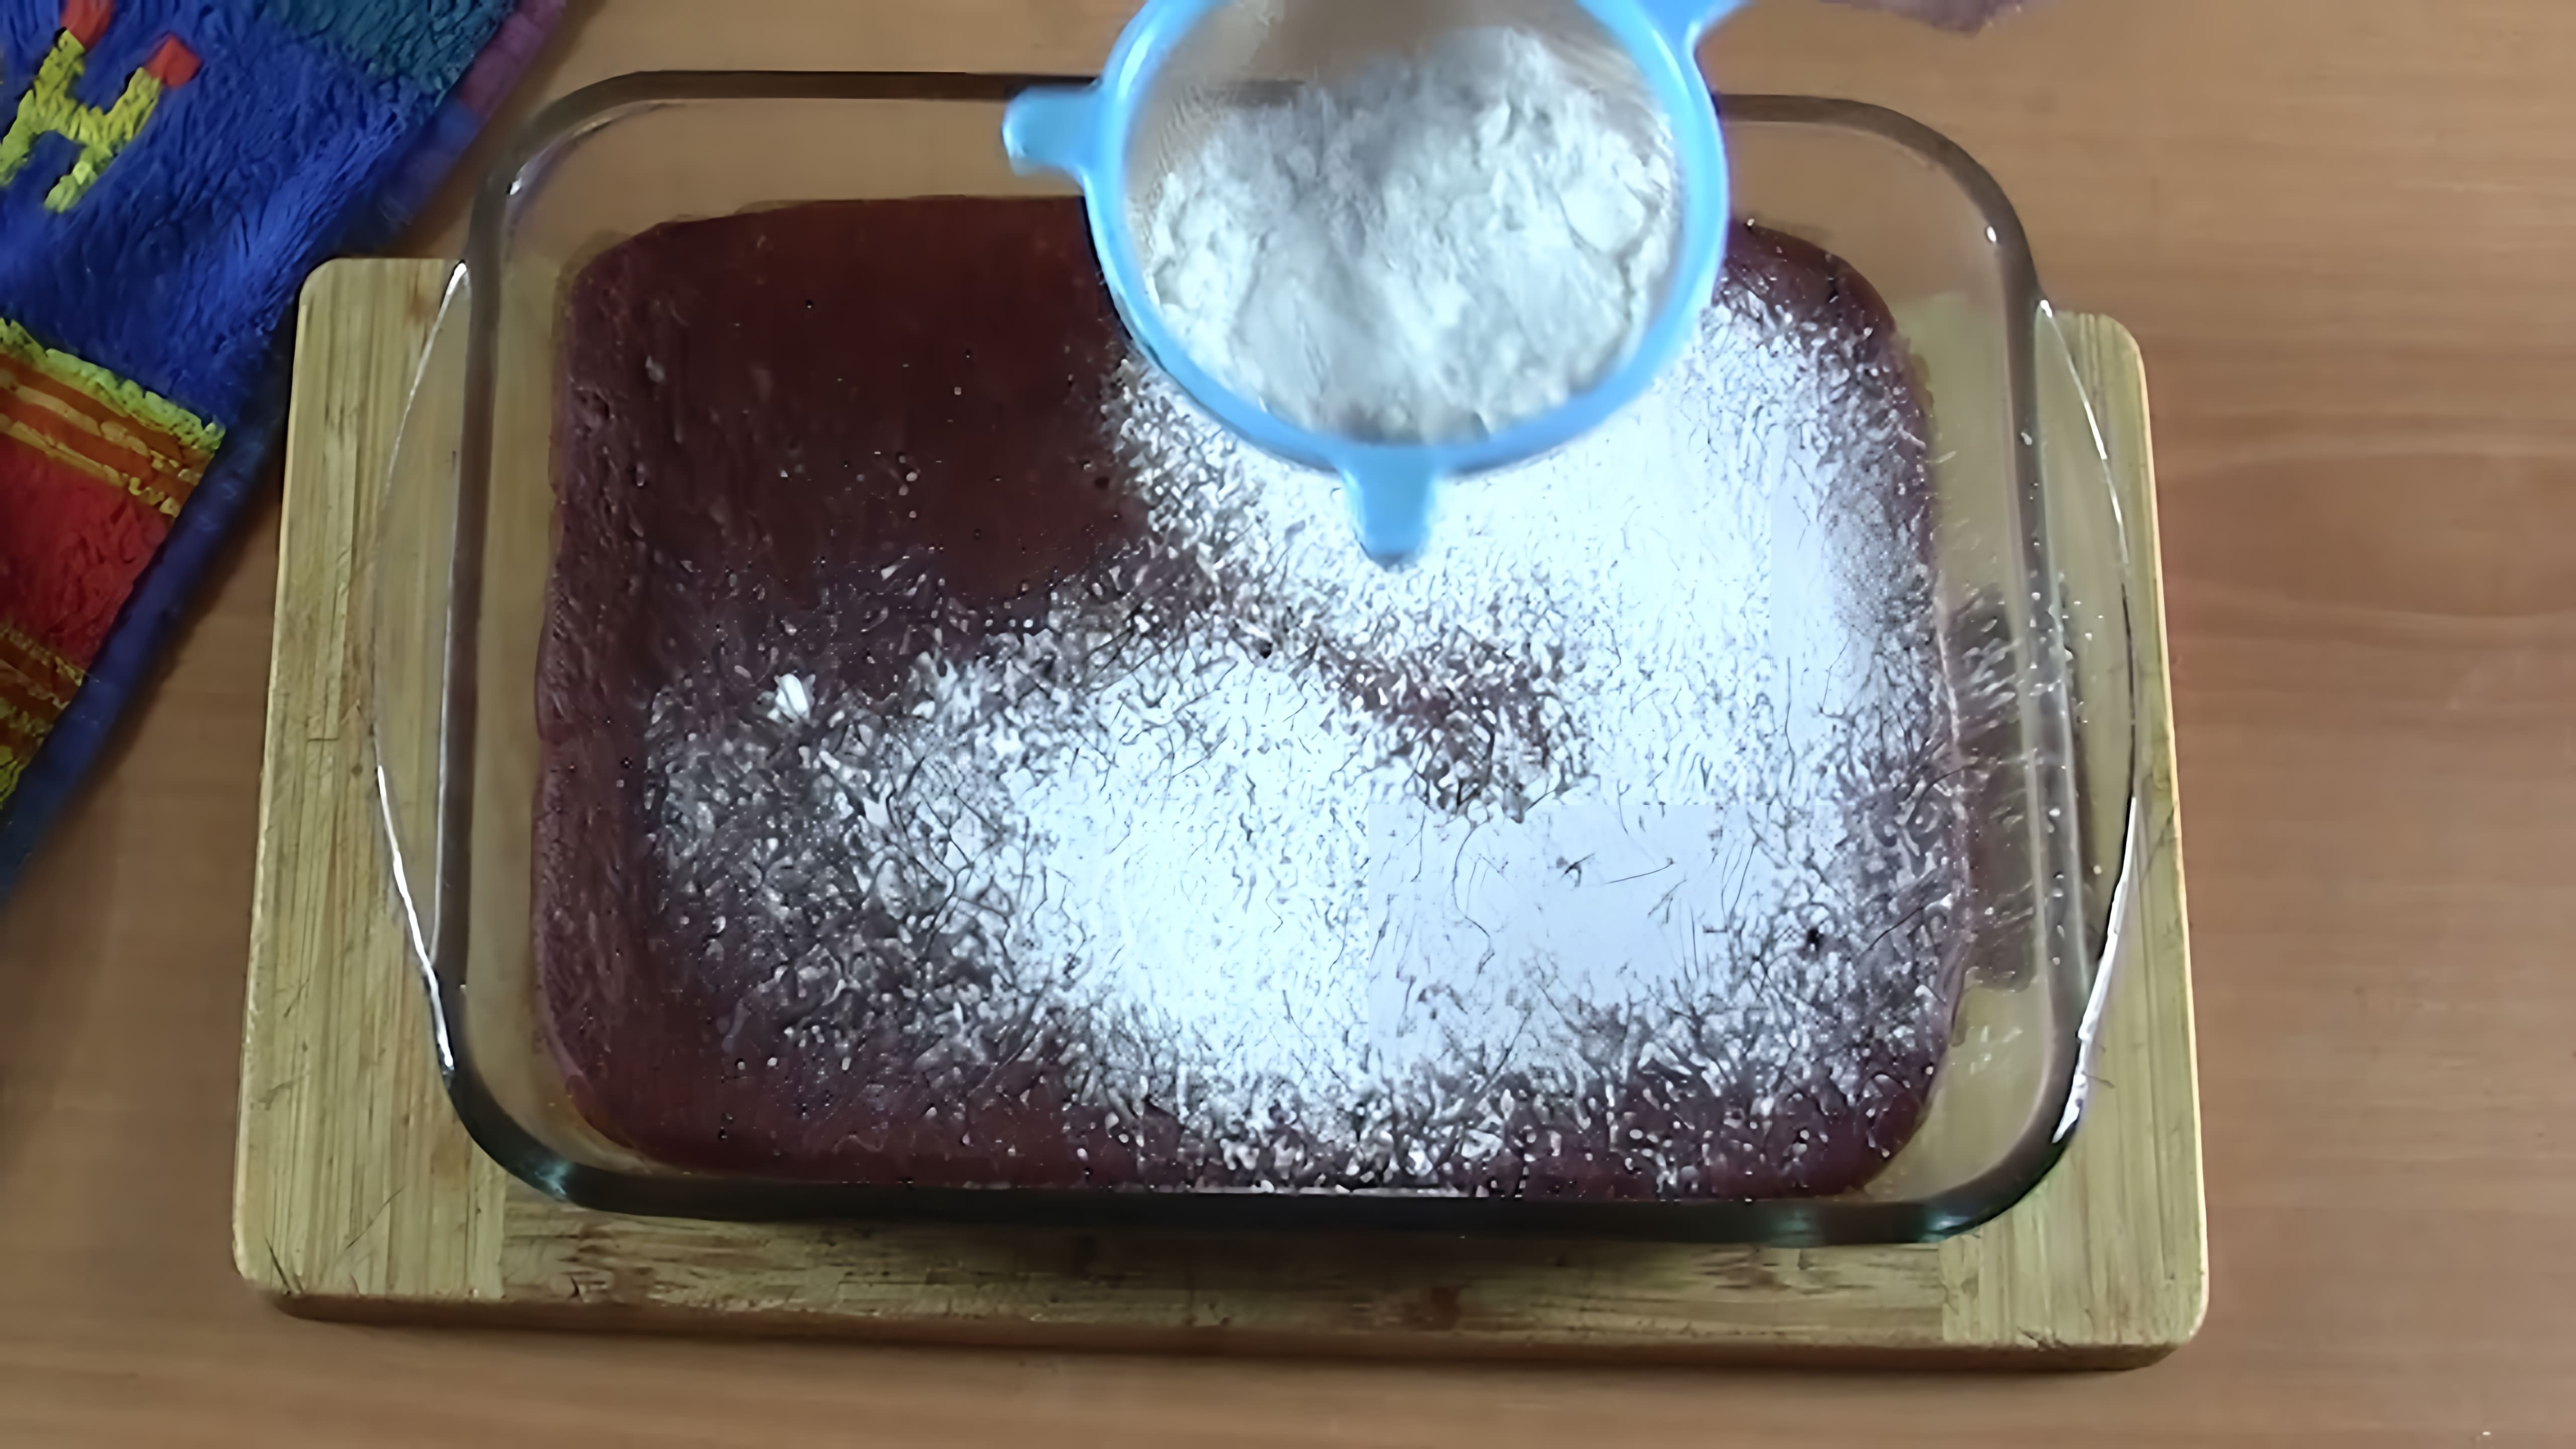 "Пирог из муки и томатного сока" - это необычный рецепт, который может удивить своим вкусом и оригинальностью